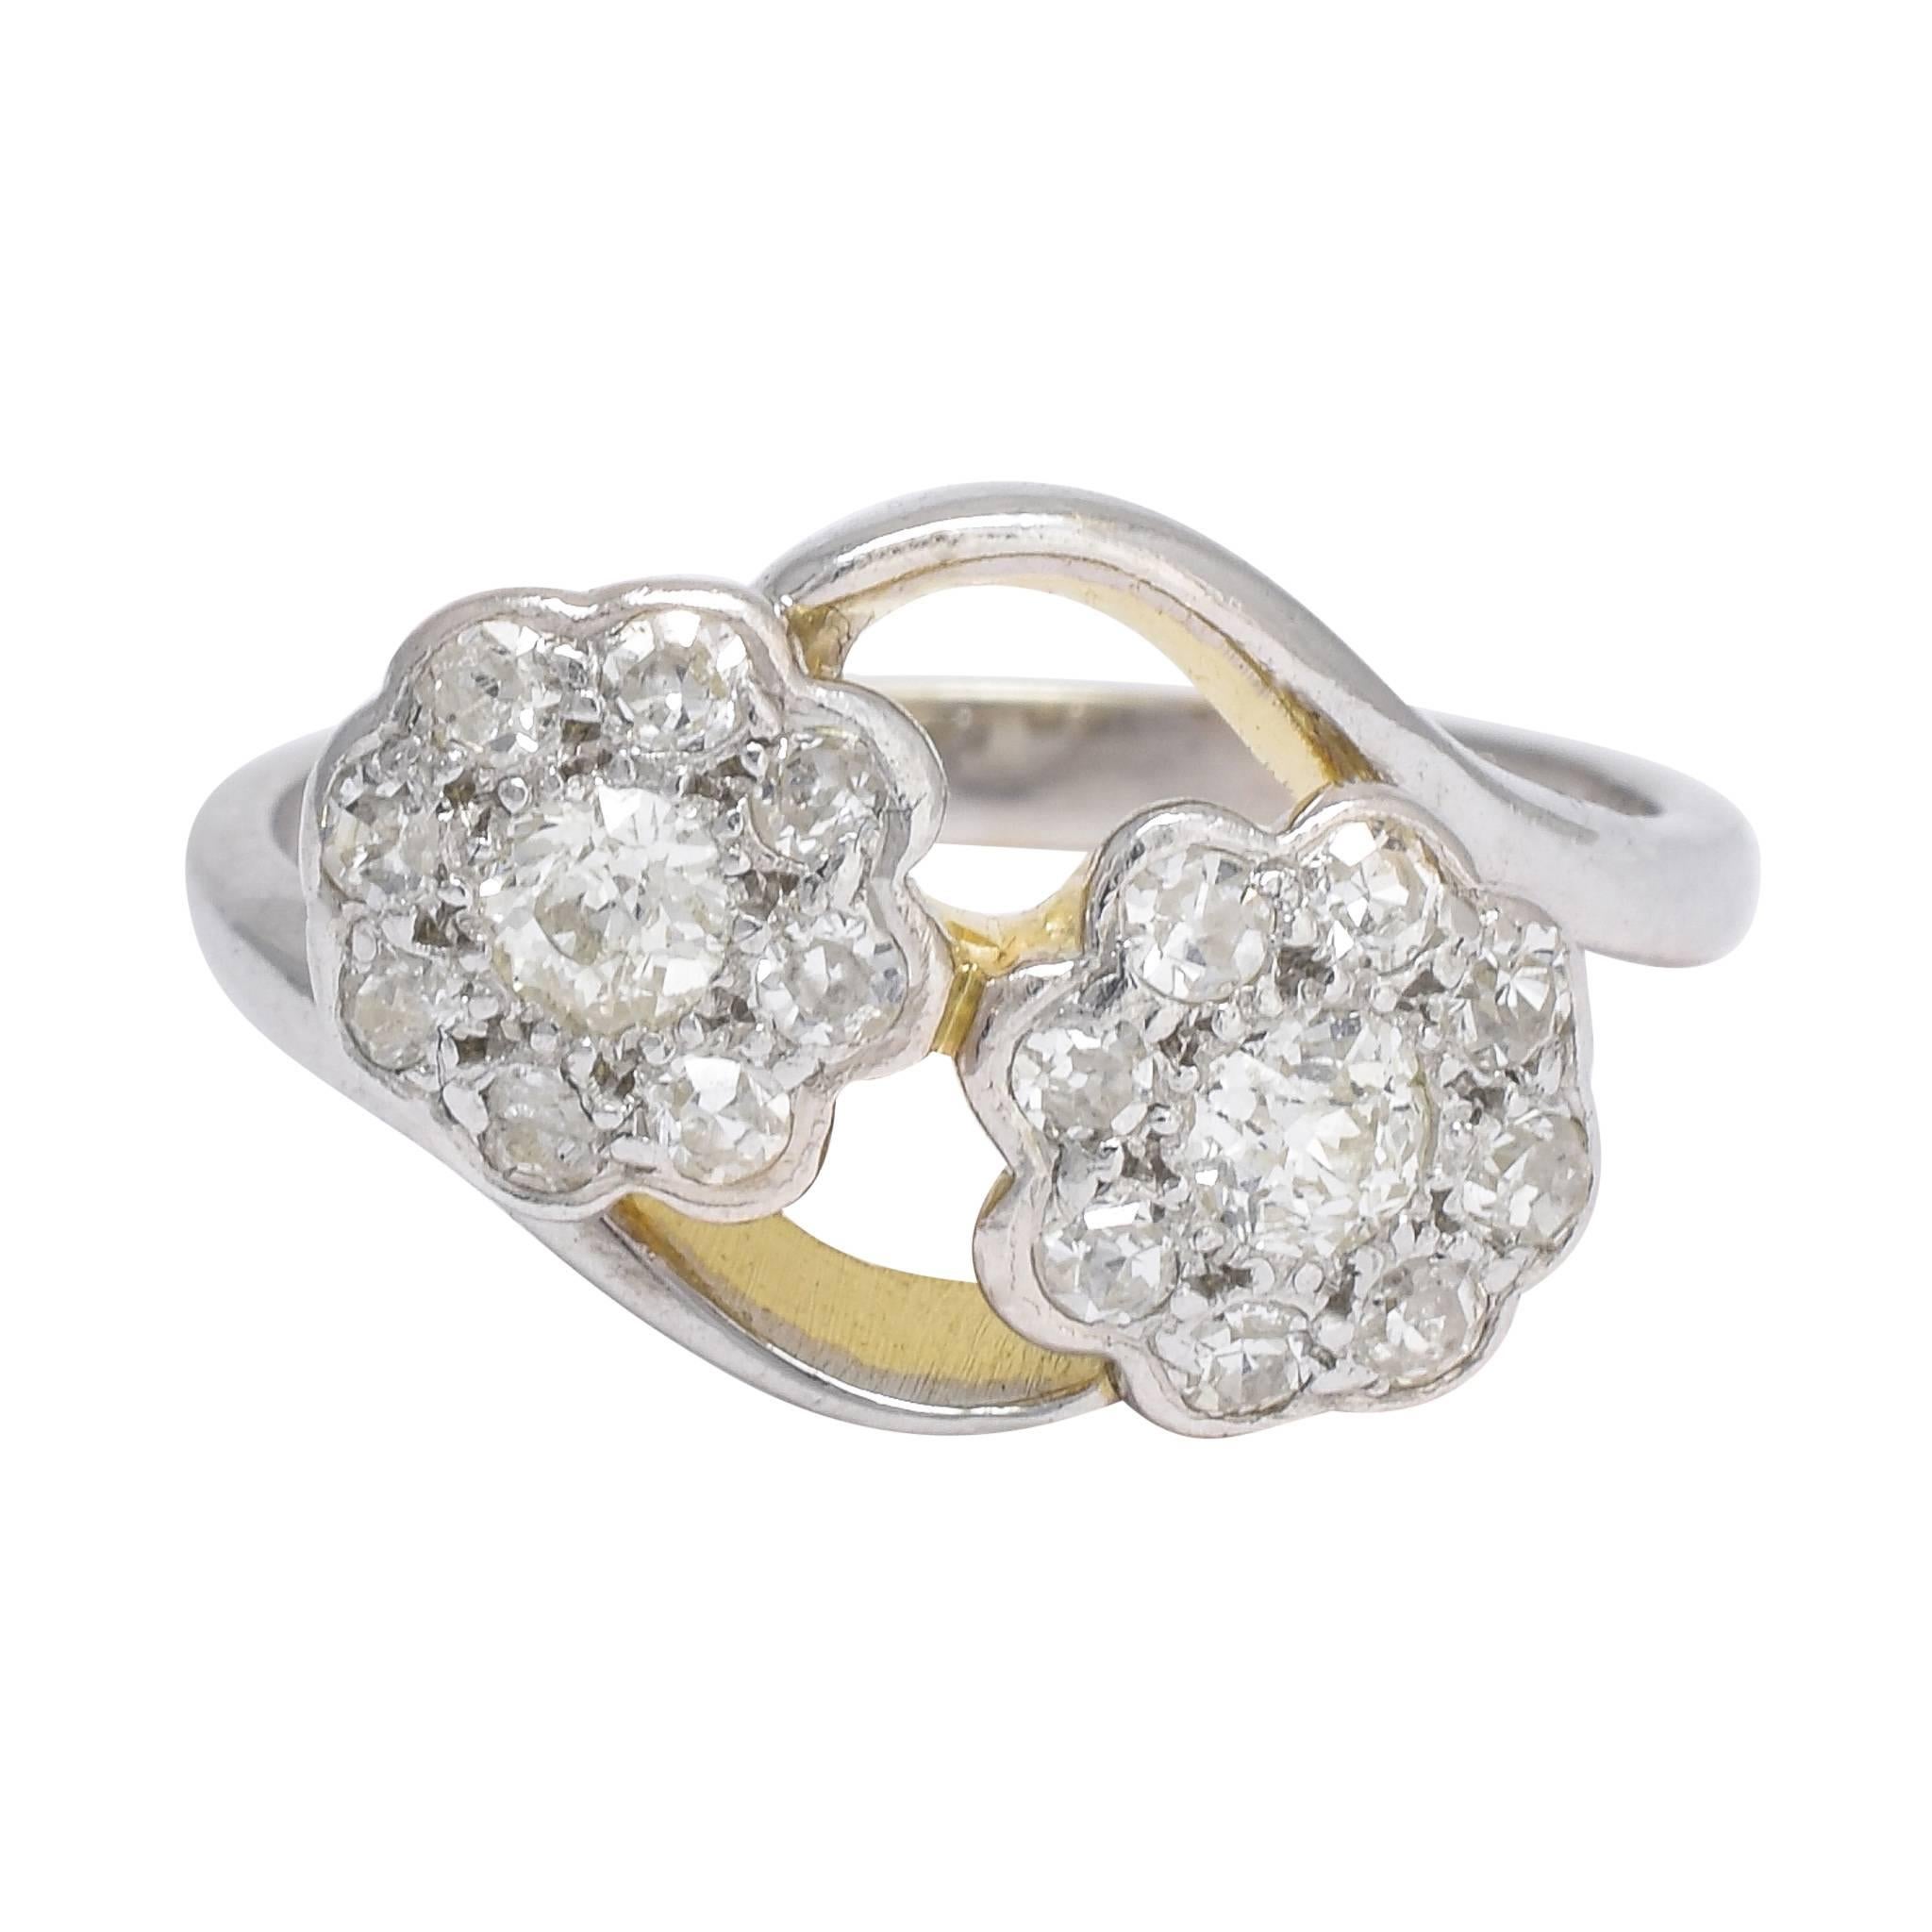 Antique Art Nouveau Diamond Double Daisy Cluster Ring